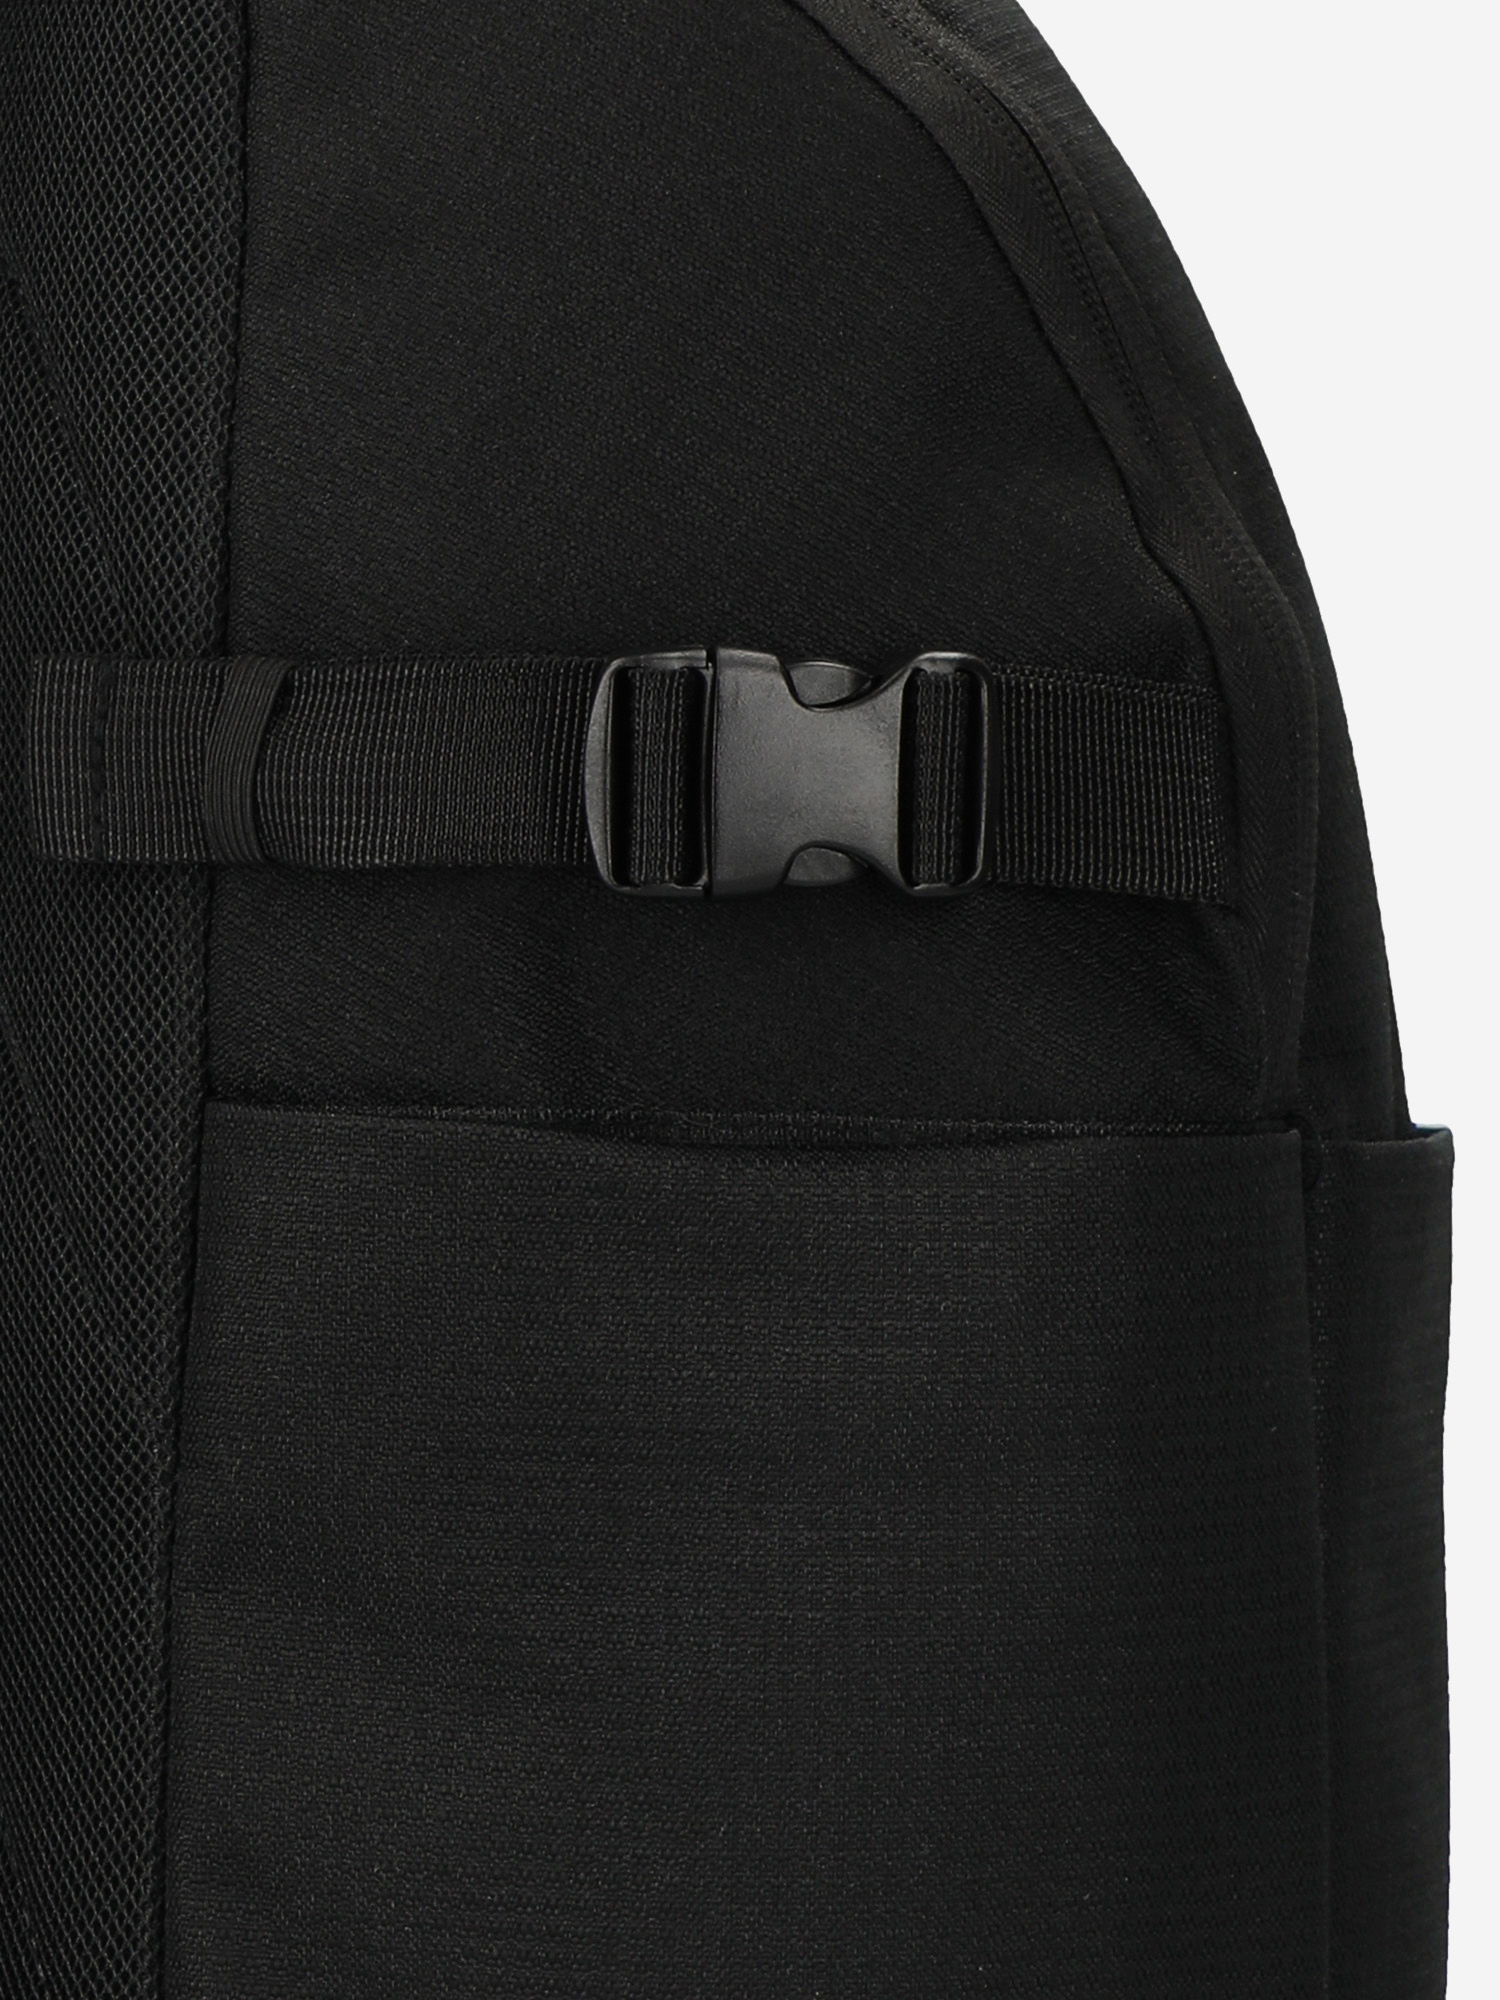 Рюкзак Kappa, Черный 125501KAP-99, размер 26 х 16 х 45 - фото 4